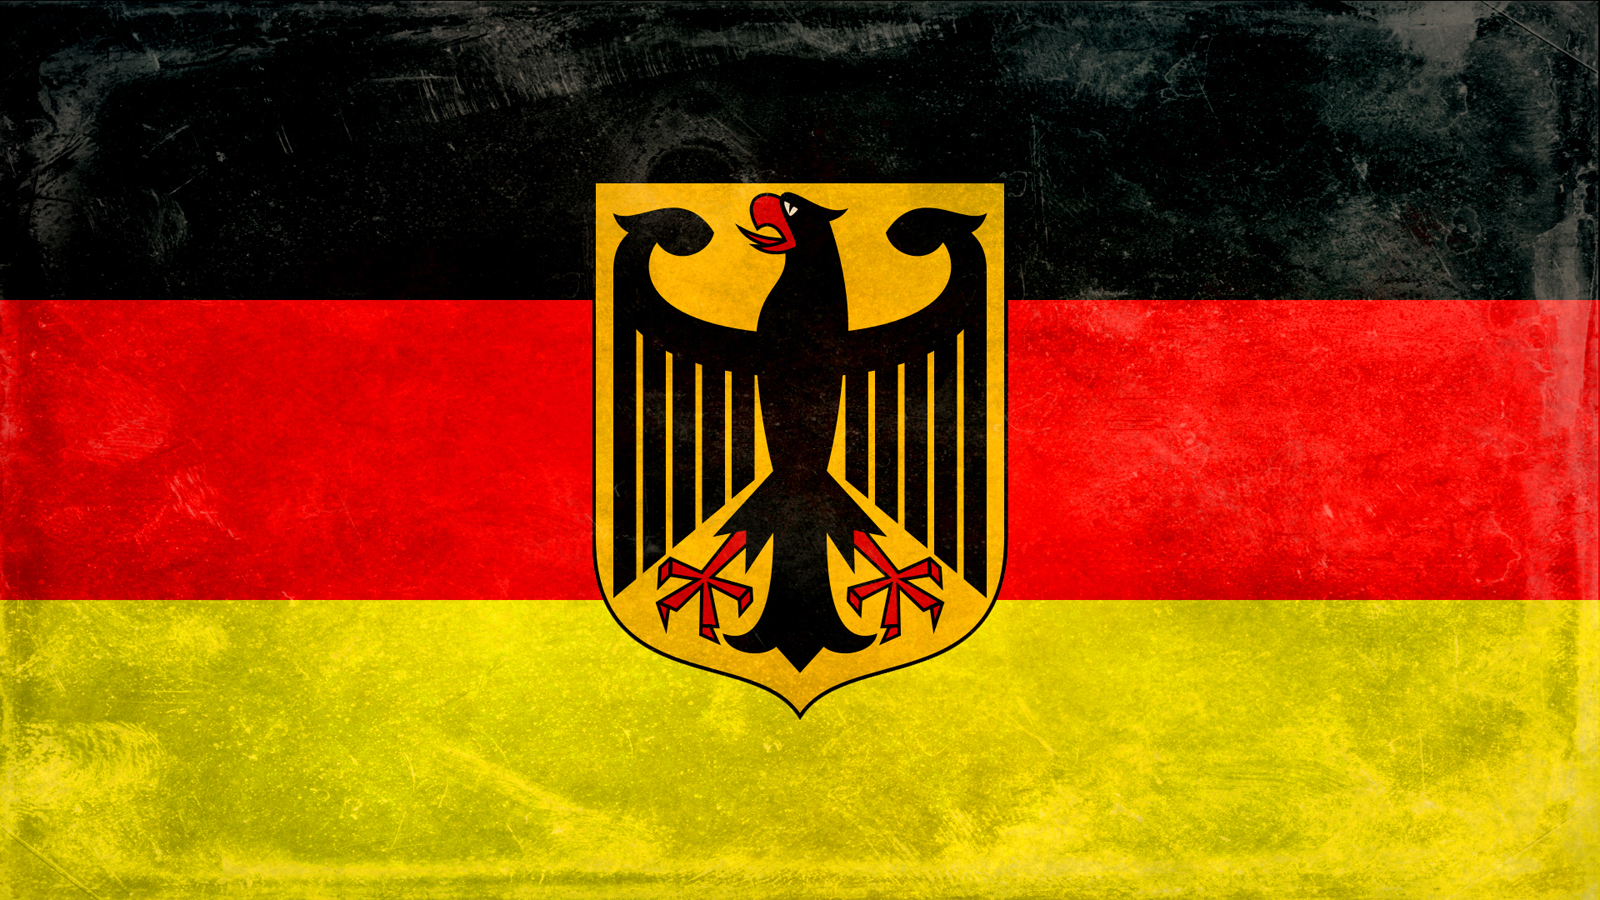 HDq Germany Flag Image Collection For Desktop Vv